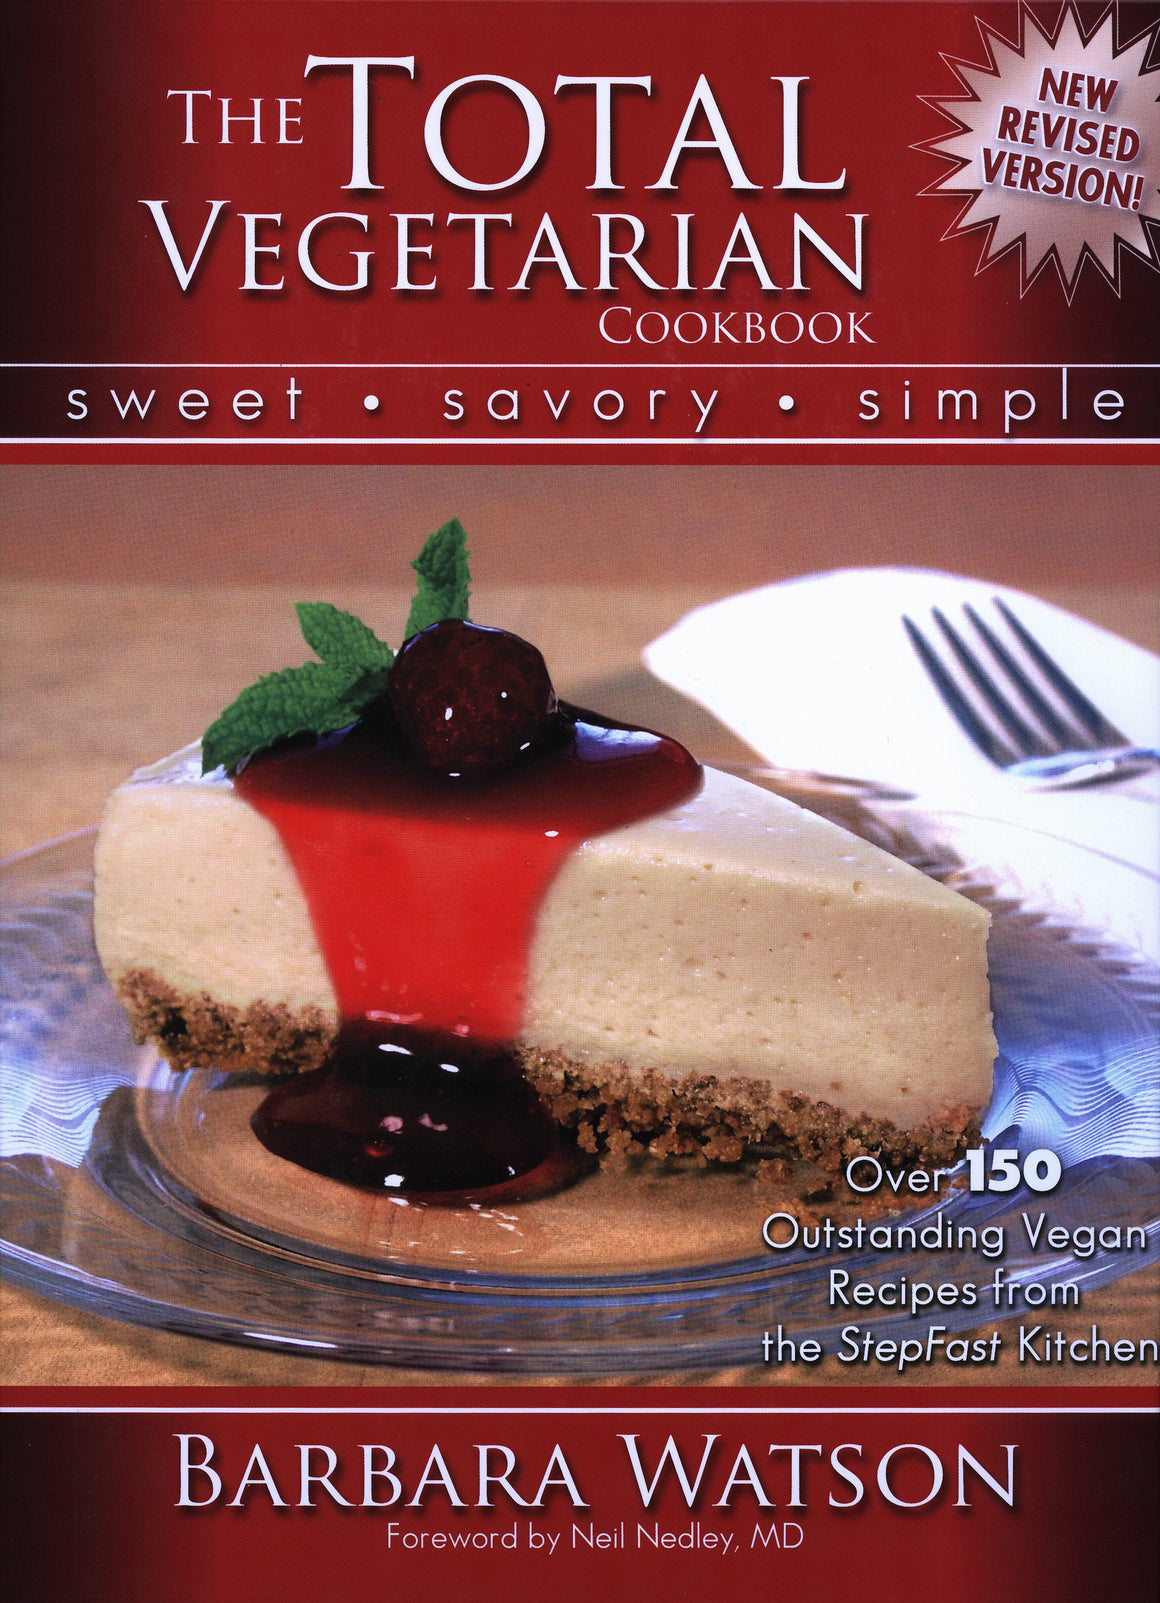 The Total Vegetarian, Cookbook